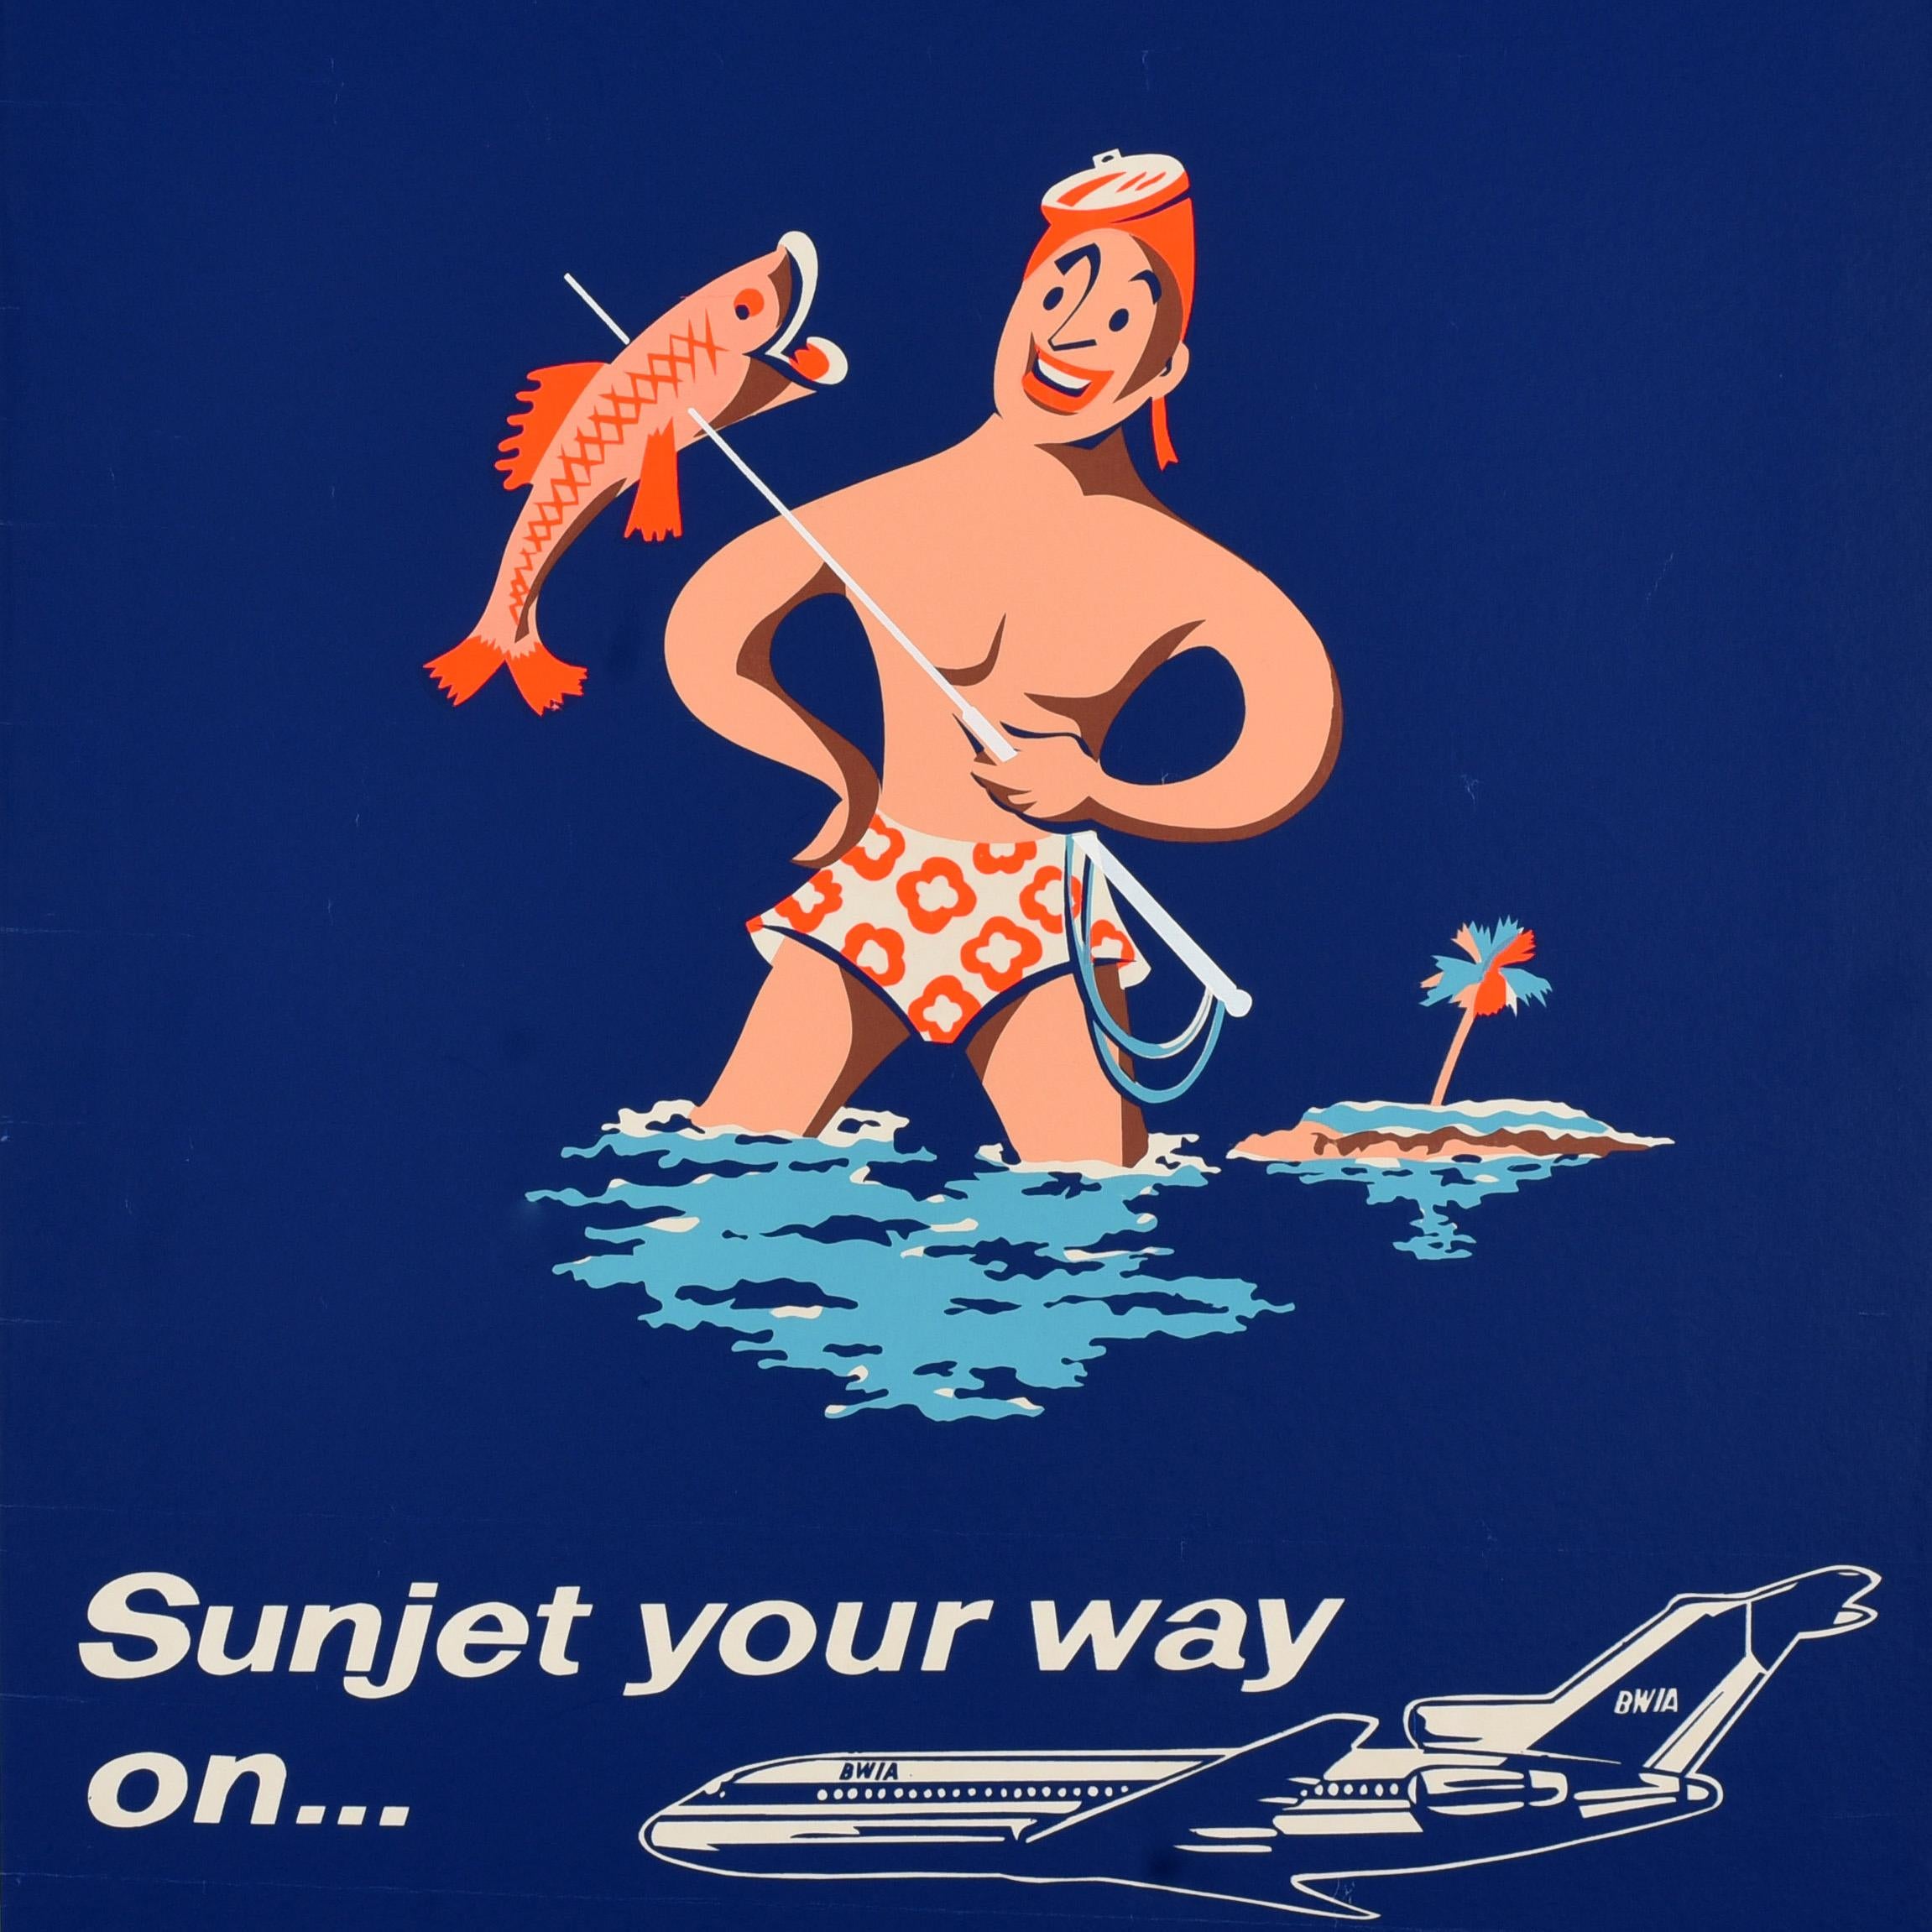 Original Vintage Reiseplakat - Antigua Sunjet your way on ... BWIA - mit einem Fischereimotiv, das einen lächelnden Mann in geblümter Badehose und mit einer Maske auf dem Kopf zeigt, der einen Speer mit einem Fisch in der Hand vor einer Palme auf